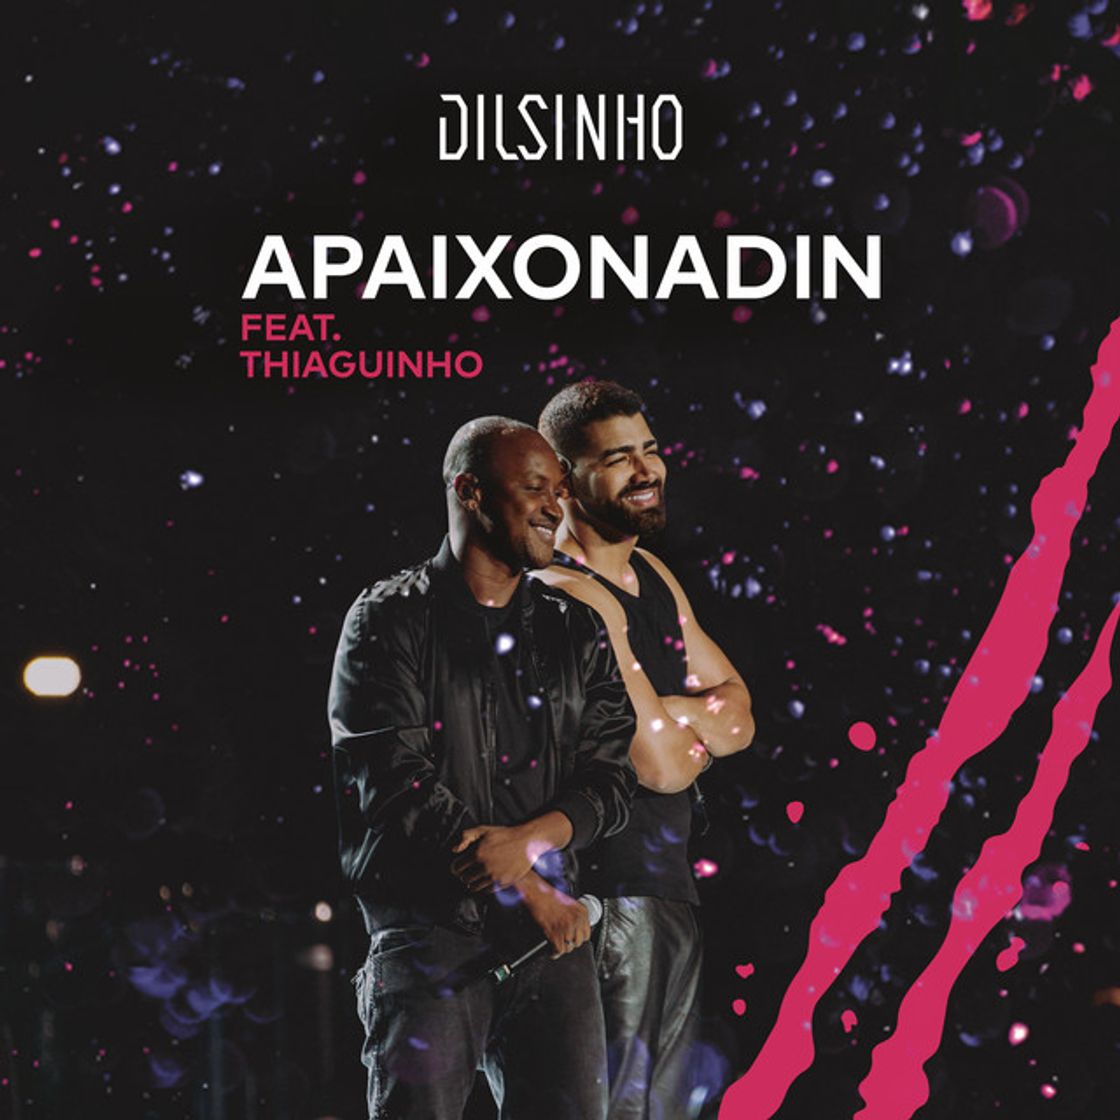 Apaixonadin (feat. Thiaguinho) - Ao Vivo